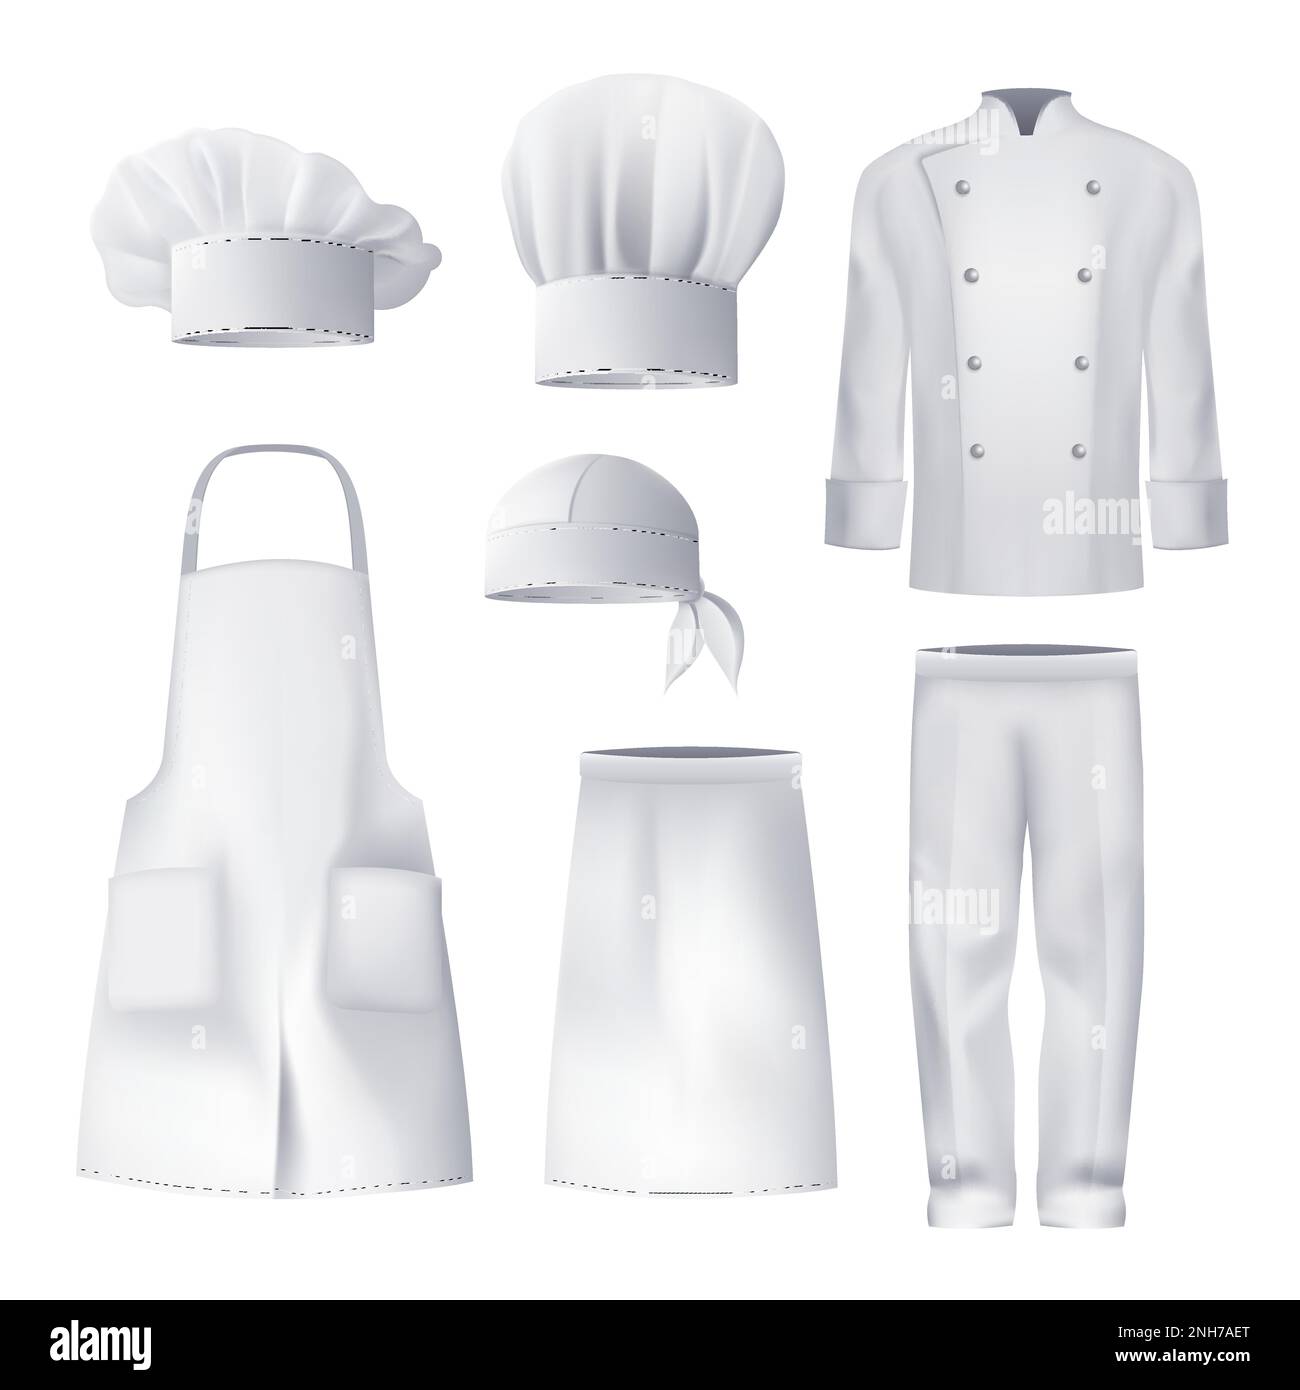 Realistisches weißes Modell kulinarischer Arbeitskleidung, einschließlich Kopfschürze Jacke Hose isolierte Vektordarstellung Stock Vektor